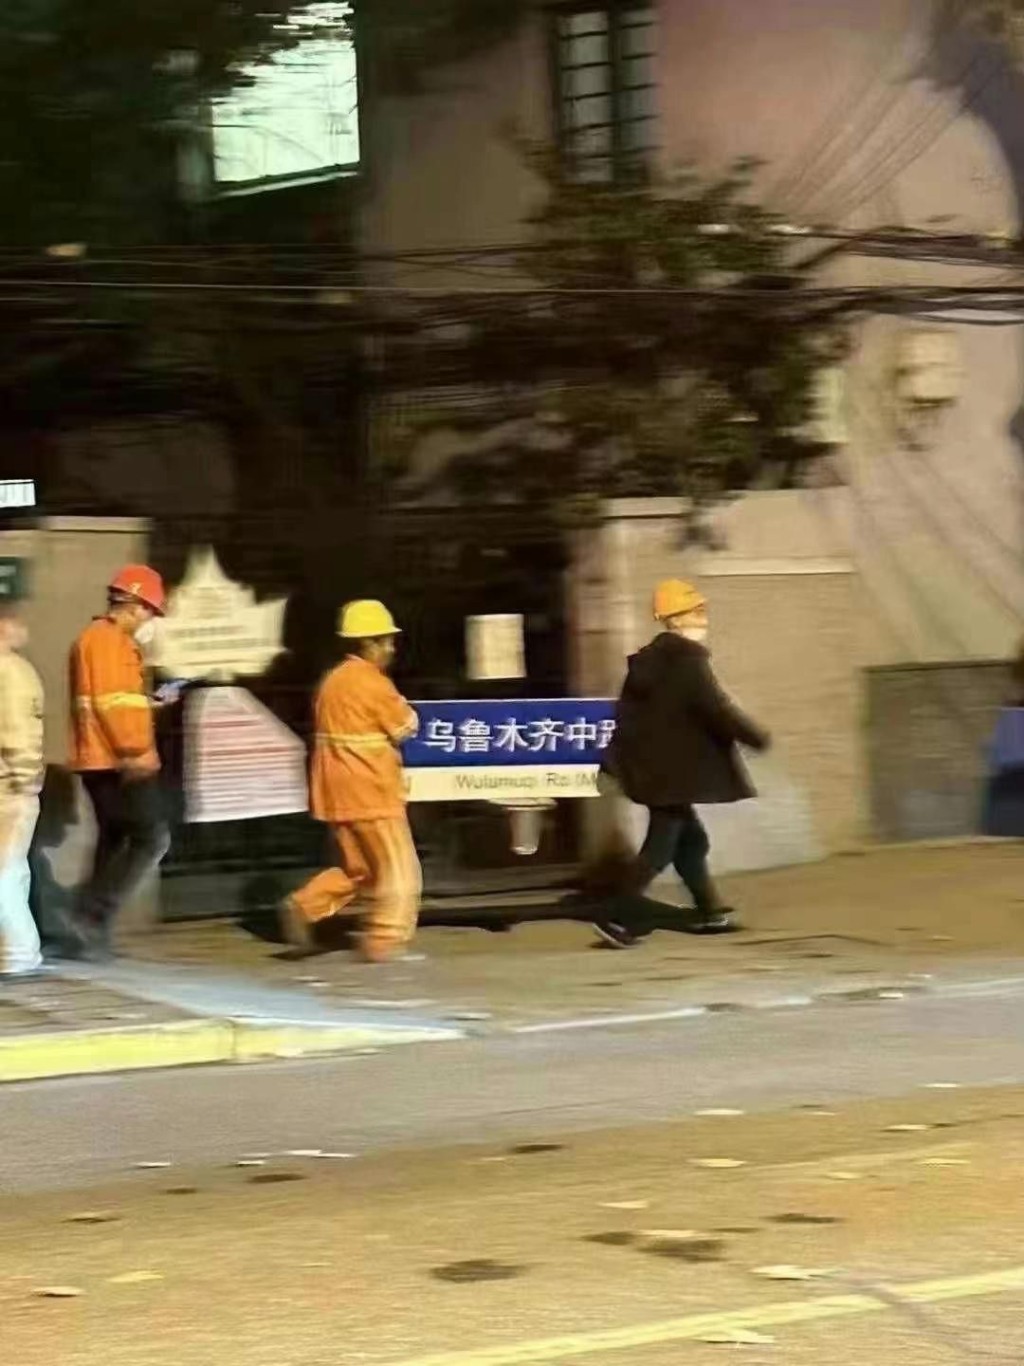 昨晚上海有工作人员拆走“乌鲁木齐中路”路牌。互联网